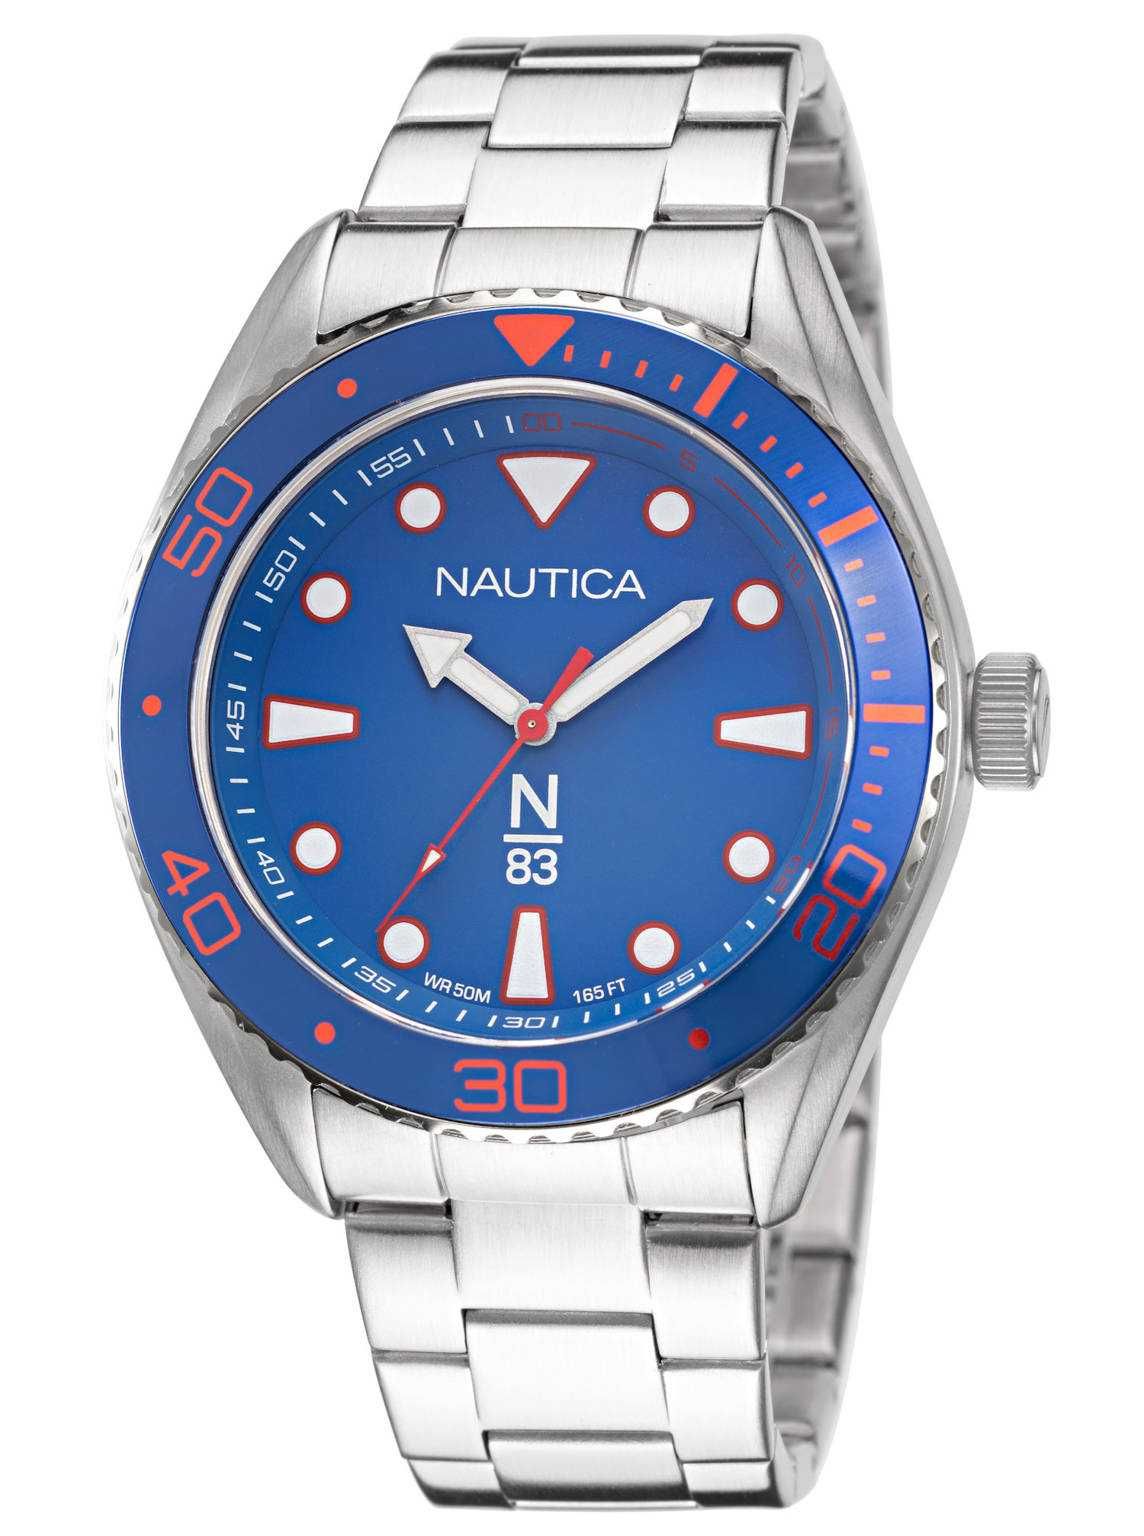 Nautica N83 NAPFWS221 часы мужские. Новые, оригинал